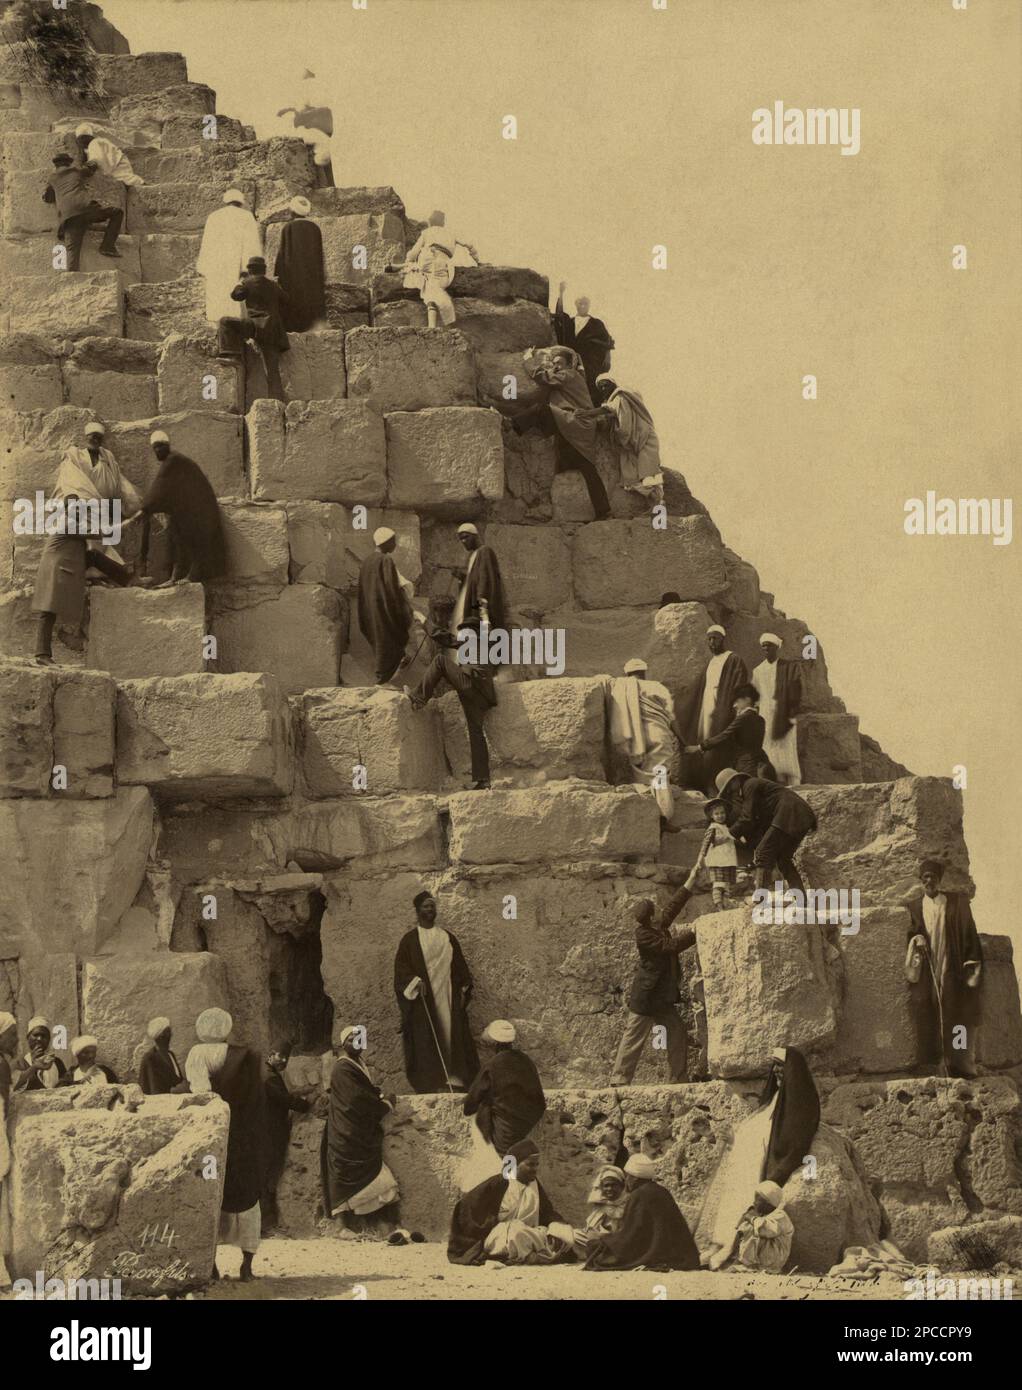 1890 ca. , GIZA , El CAIRO , EGYPT :  ' Ascension de la grande pyramide par un touriste ',  rich  tourists visiting The Great Pyramid  in Giza Necropolis . Photo by Maison Bonfils ( Beirut, Lebanon ) - ANTICO EGITTO - GRANDE PIRAMIDE - PIRAMIDI -  FOTO STORICHE - HISTORY - GEOGRAFIA - GEOGRAPHY  - ARCHITETTURA - ARCHITECTURE - ARCHEOLOGIA - ARCHEOLOGY -  Pyramids - monumento -   - Scavi archeologici - Sito archeologico - TURISMO - TURISTI - TOURISTS - VIAGGIO - TRAVEL  ----  Archivio GBB Stock Photo